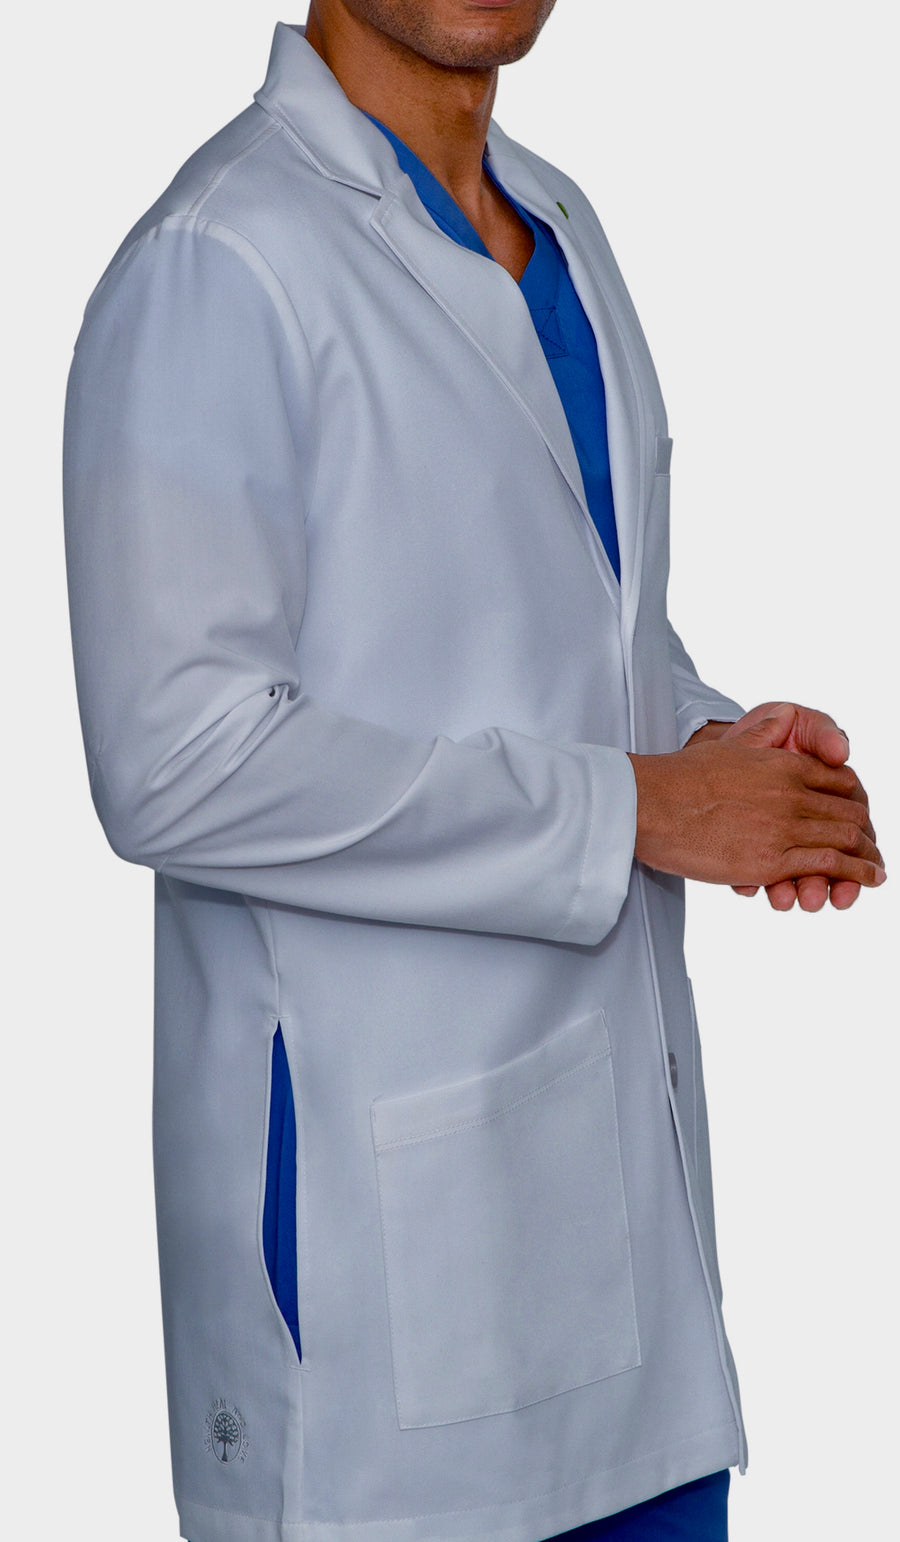 Healing Hands Logan Men's Lab Coat Six Pocket Mid-Length #HH5100